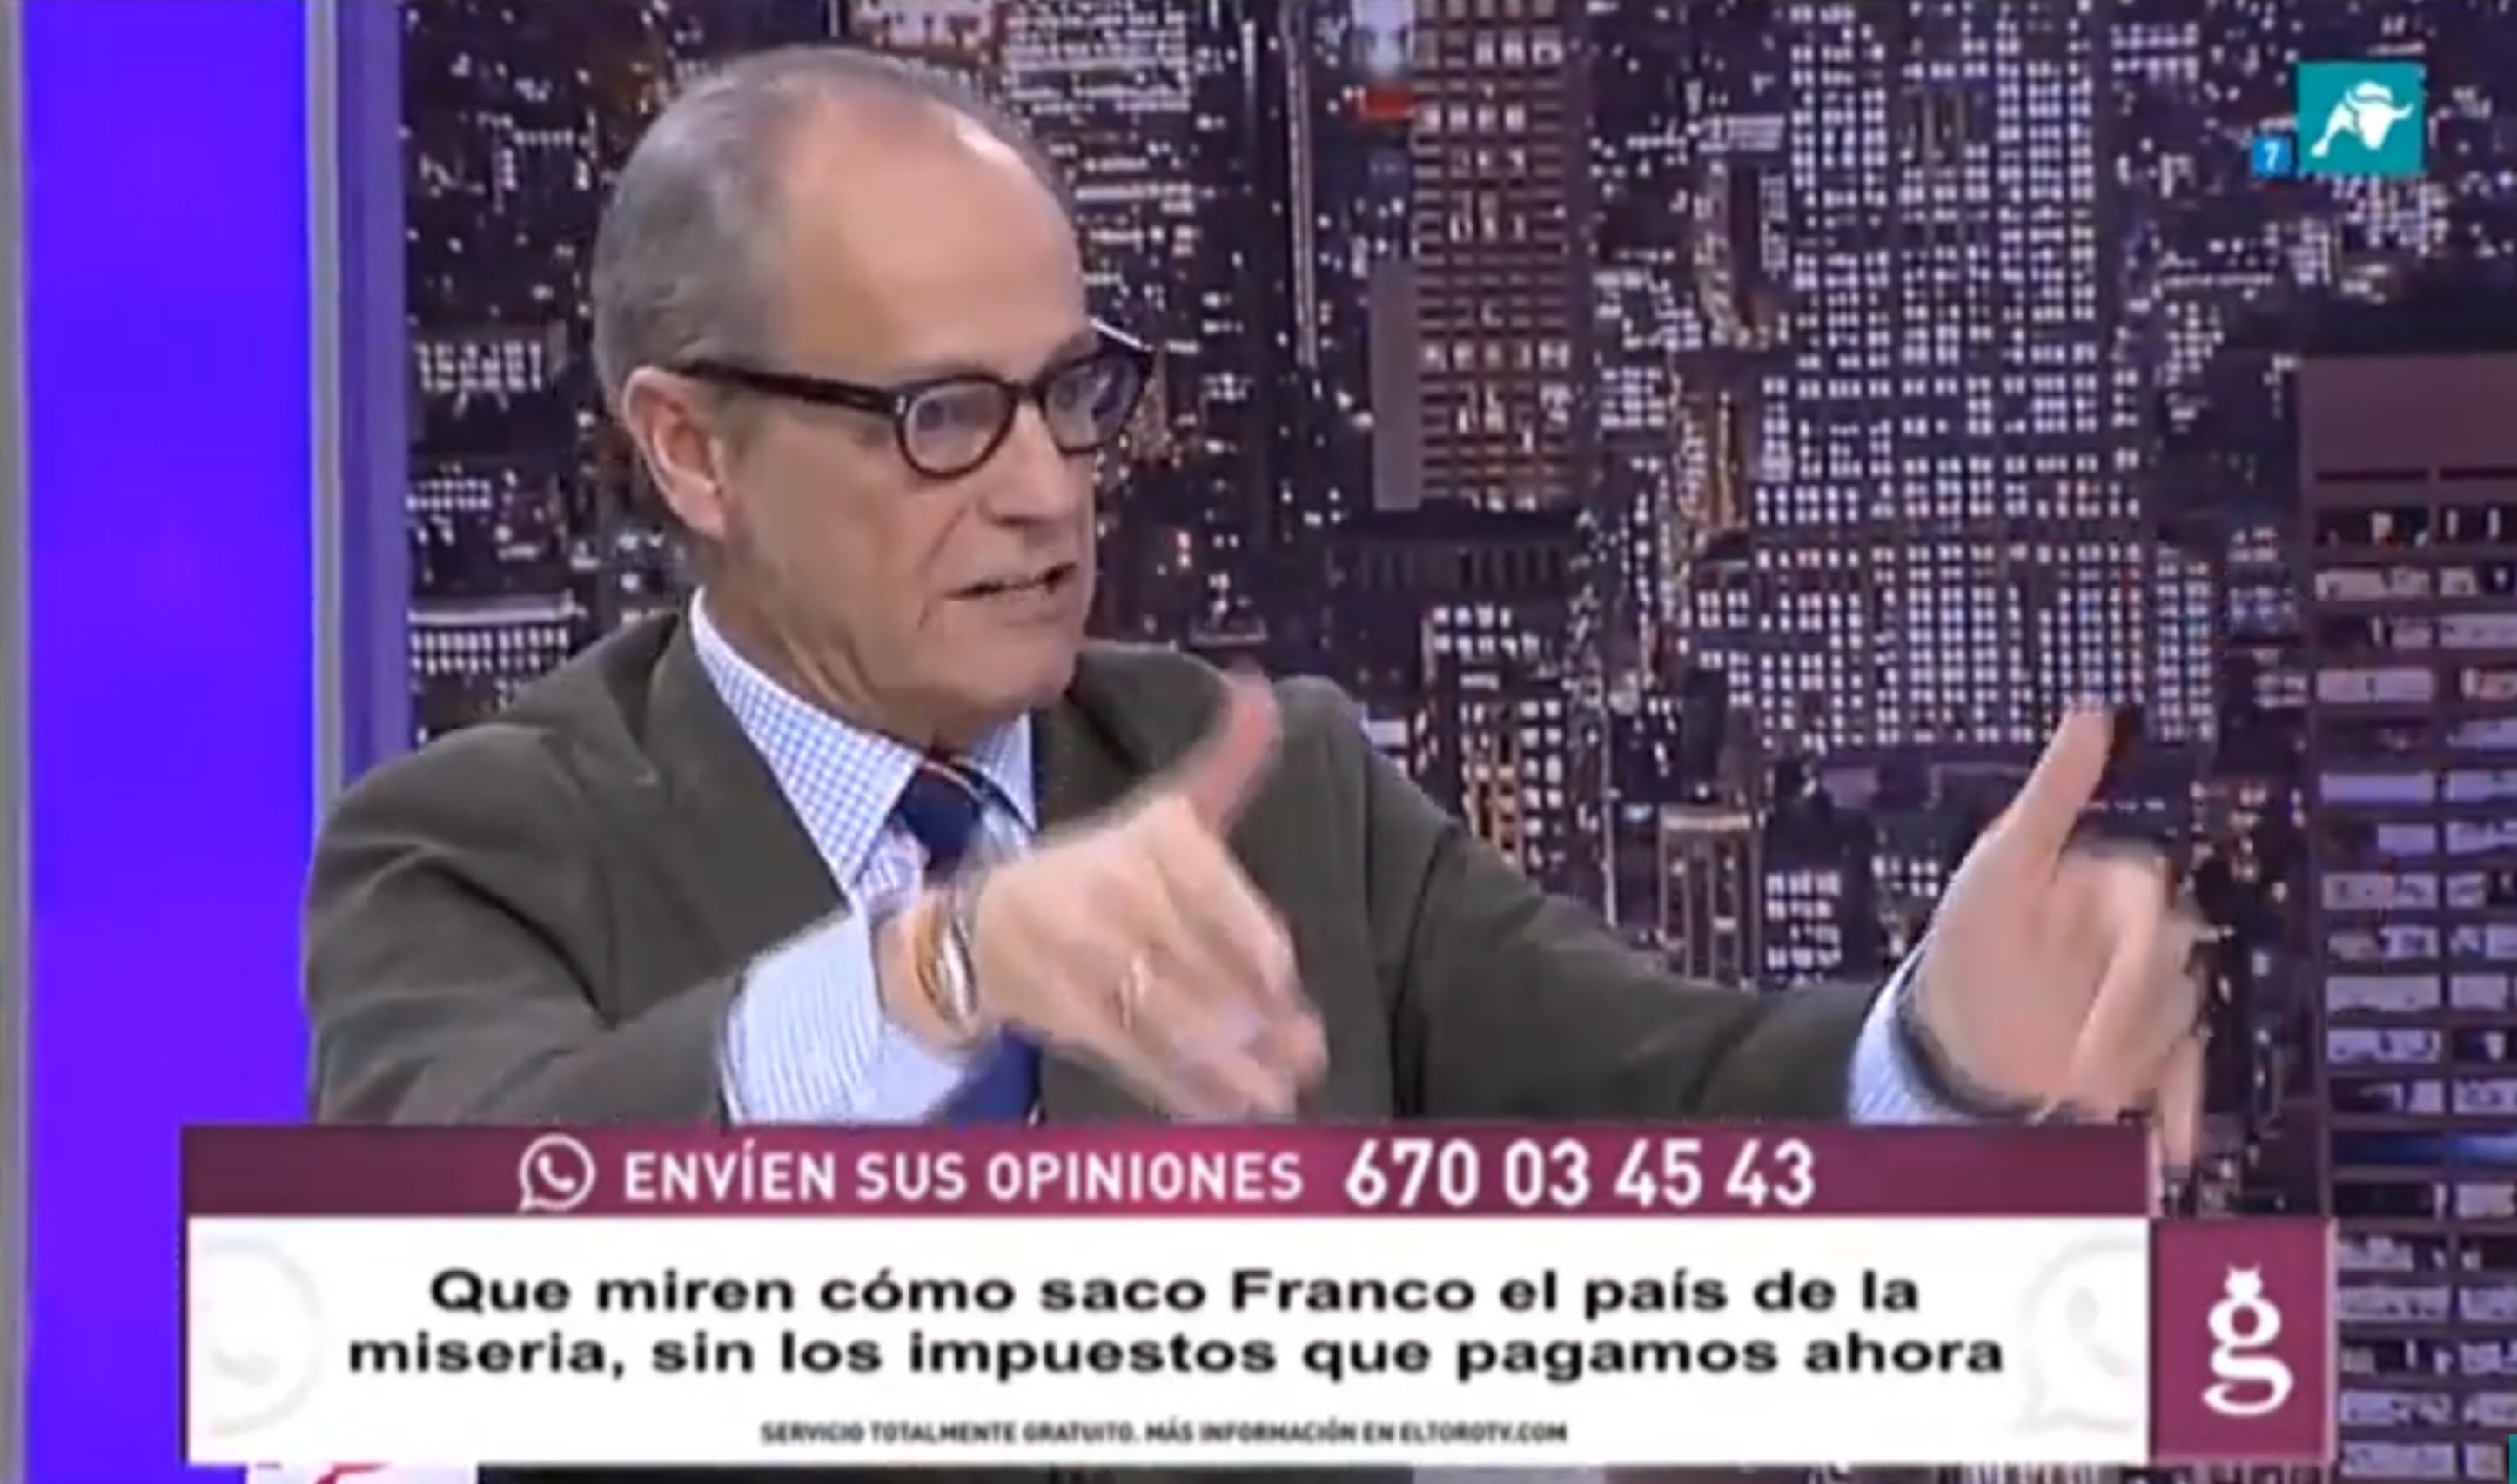 Una tele ultra, desfermada amb l'exhumació del dictador: "¡Viva Franco!"